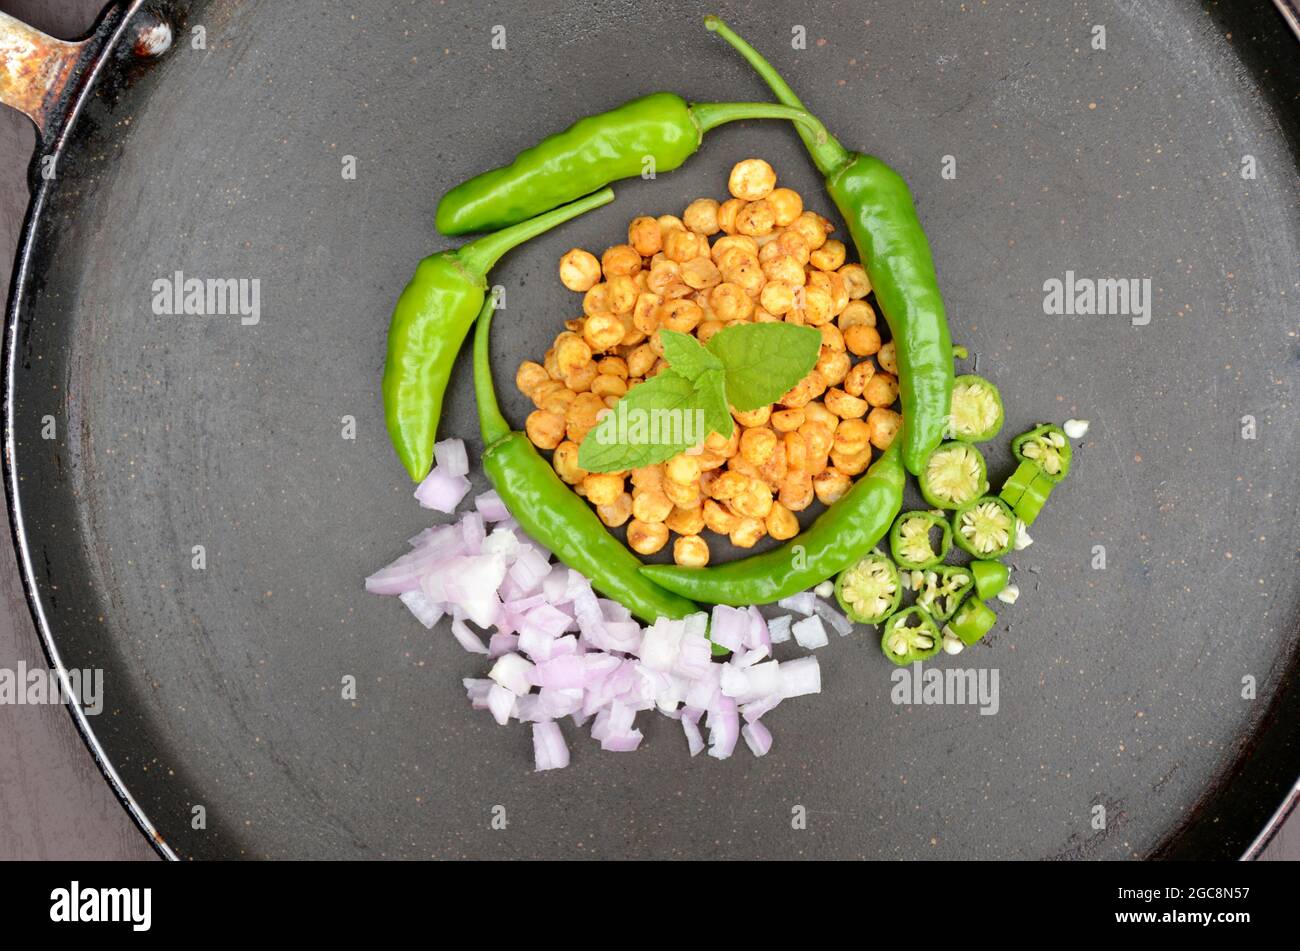 closeup le lenticchie giallo bengala fritte con menta, verde peperoncino, cipolla a fette, su sfondo nero fuori fuoco. Foto Stock